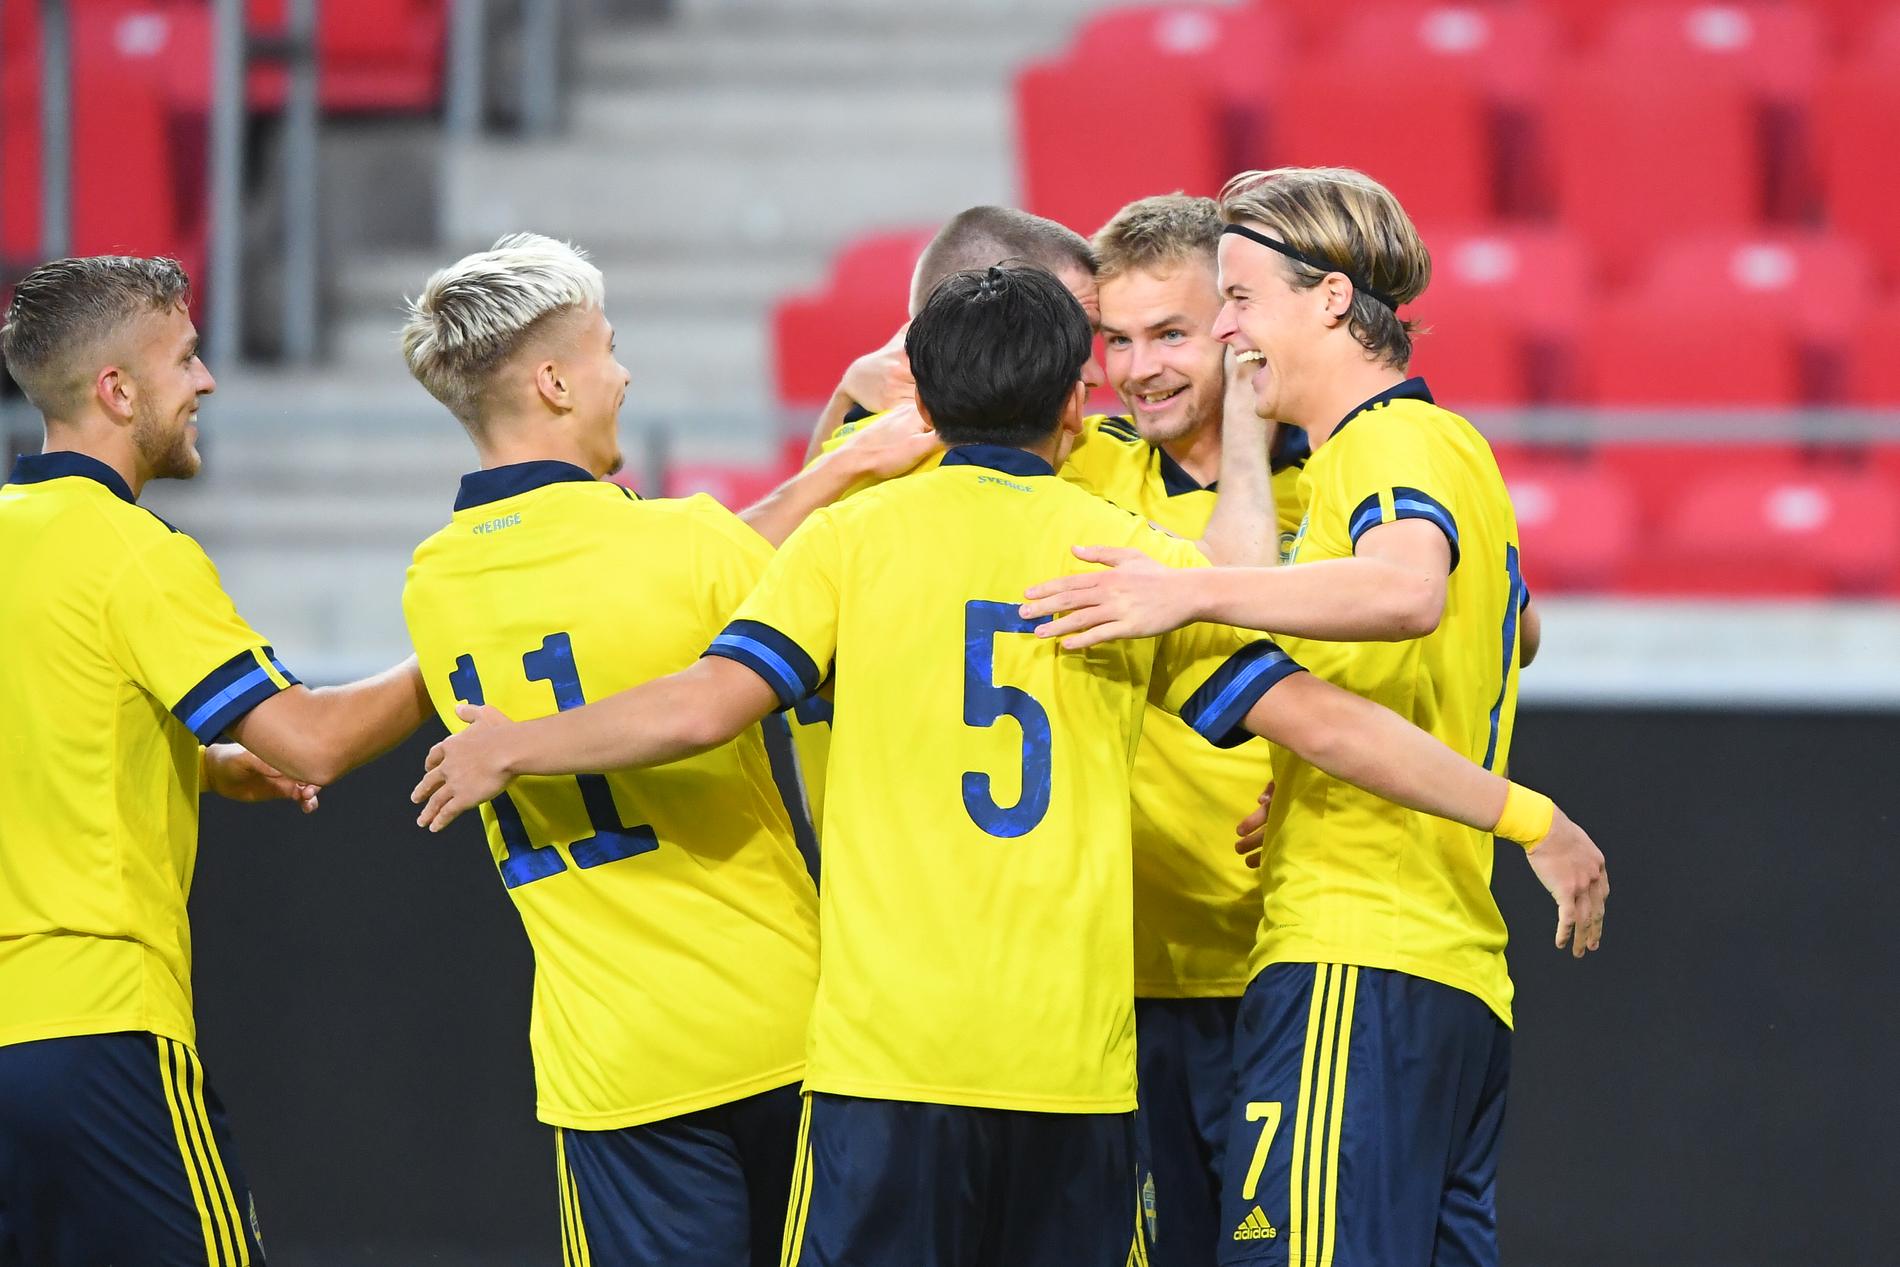 Sveriges Gustav Henriksson näst längst till höger har gjort 3–0 och grattas av Pontus Almqvist (11) och Eric Kahl (5) i Kalmar.